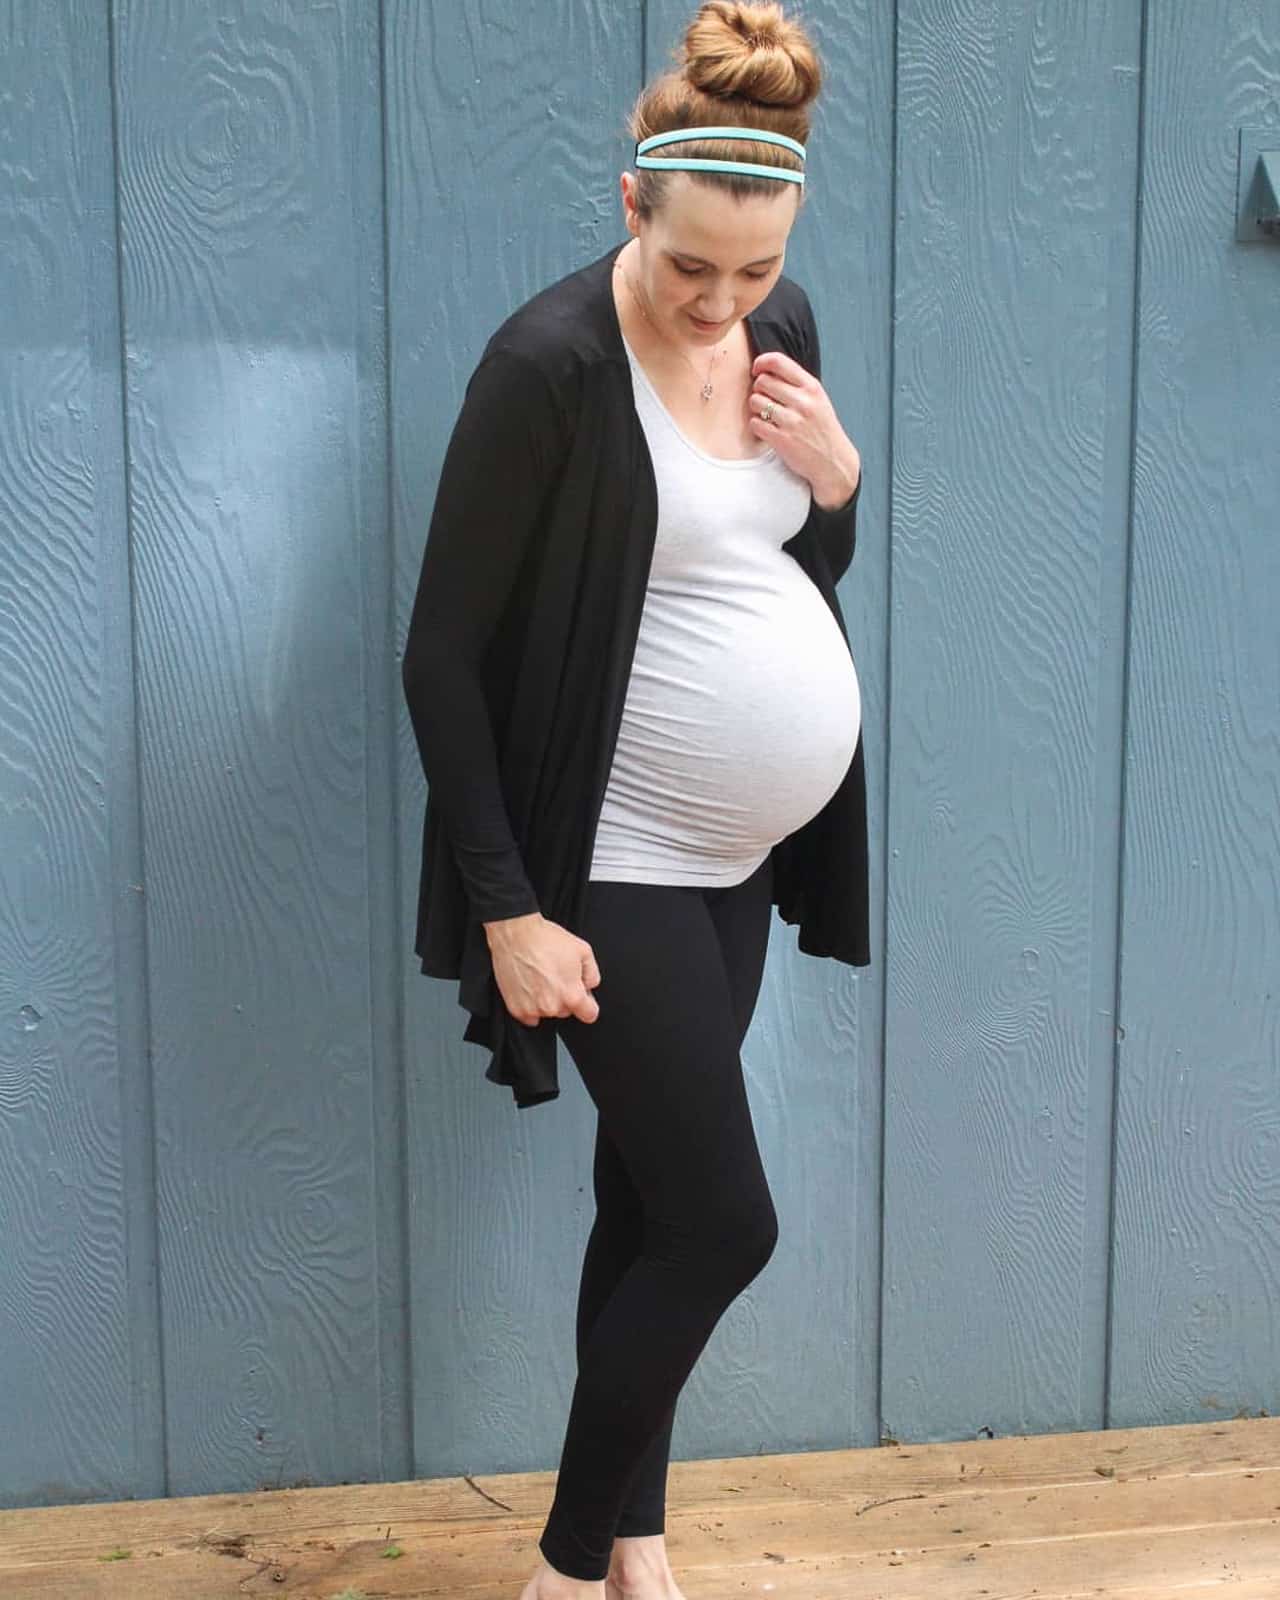 Pregnant woman models maternity leggings for 3rd trimester.